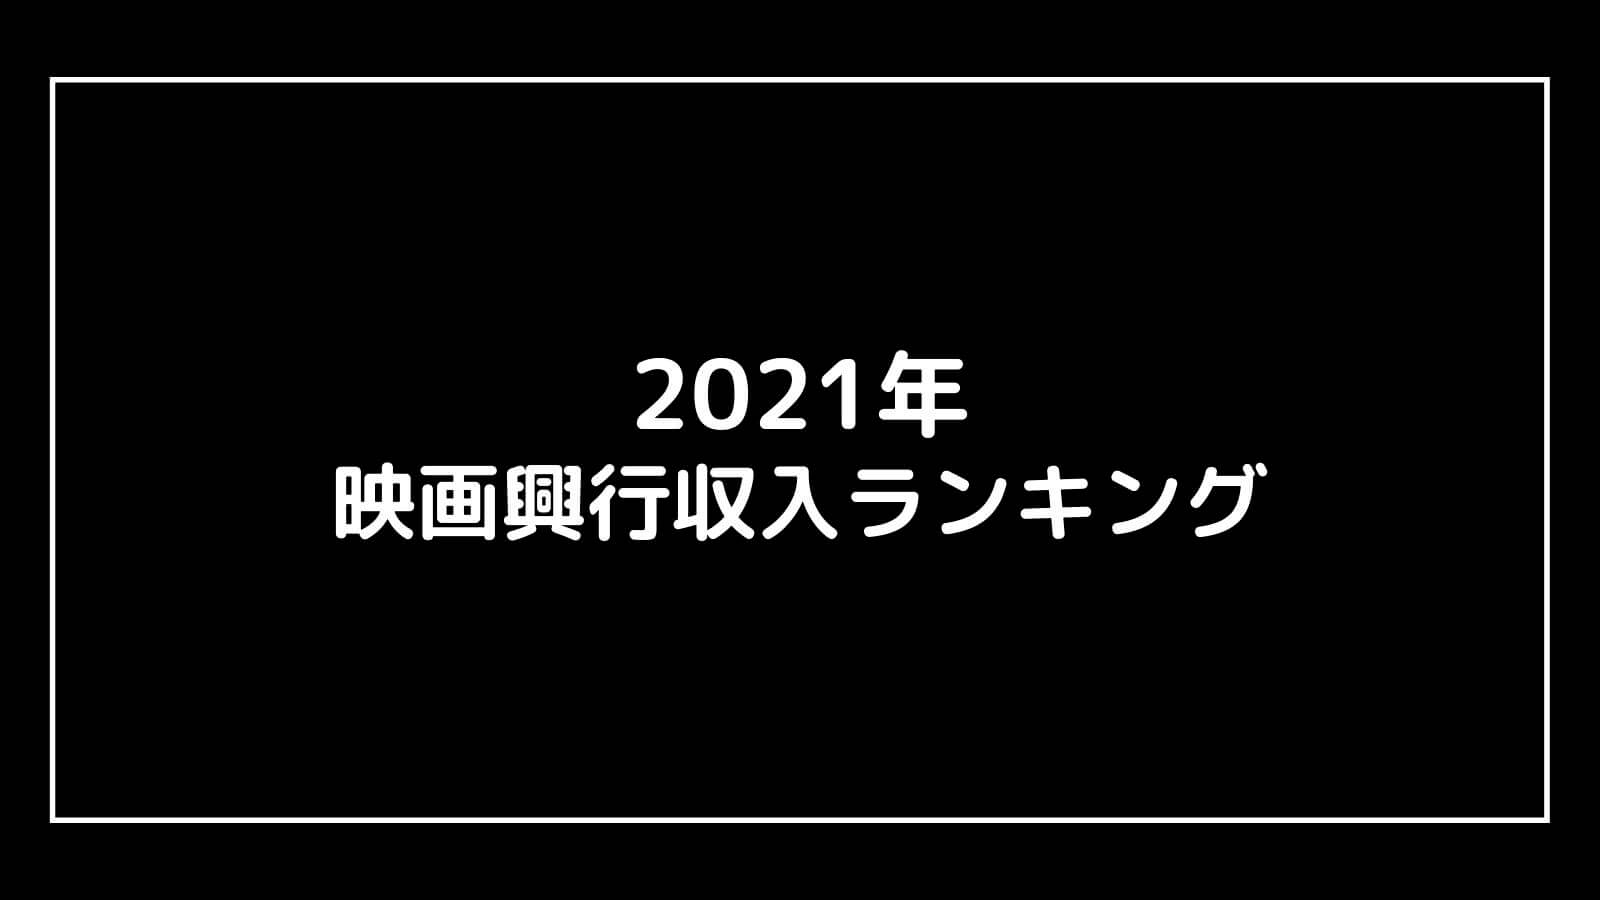 【2021年】映画興行収入ランキングベスト10【邦画・洋画別】